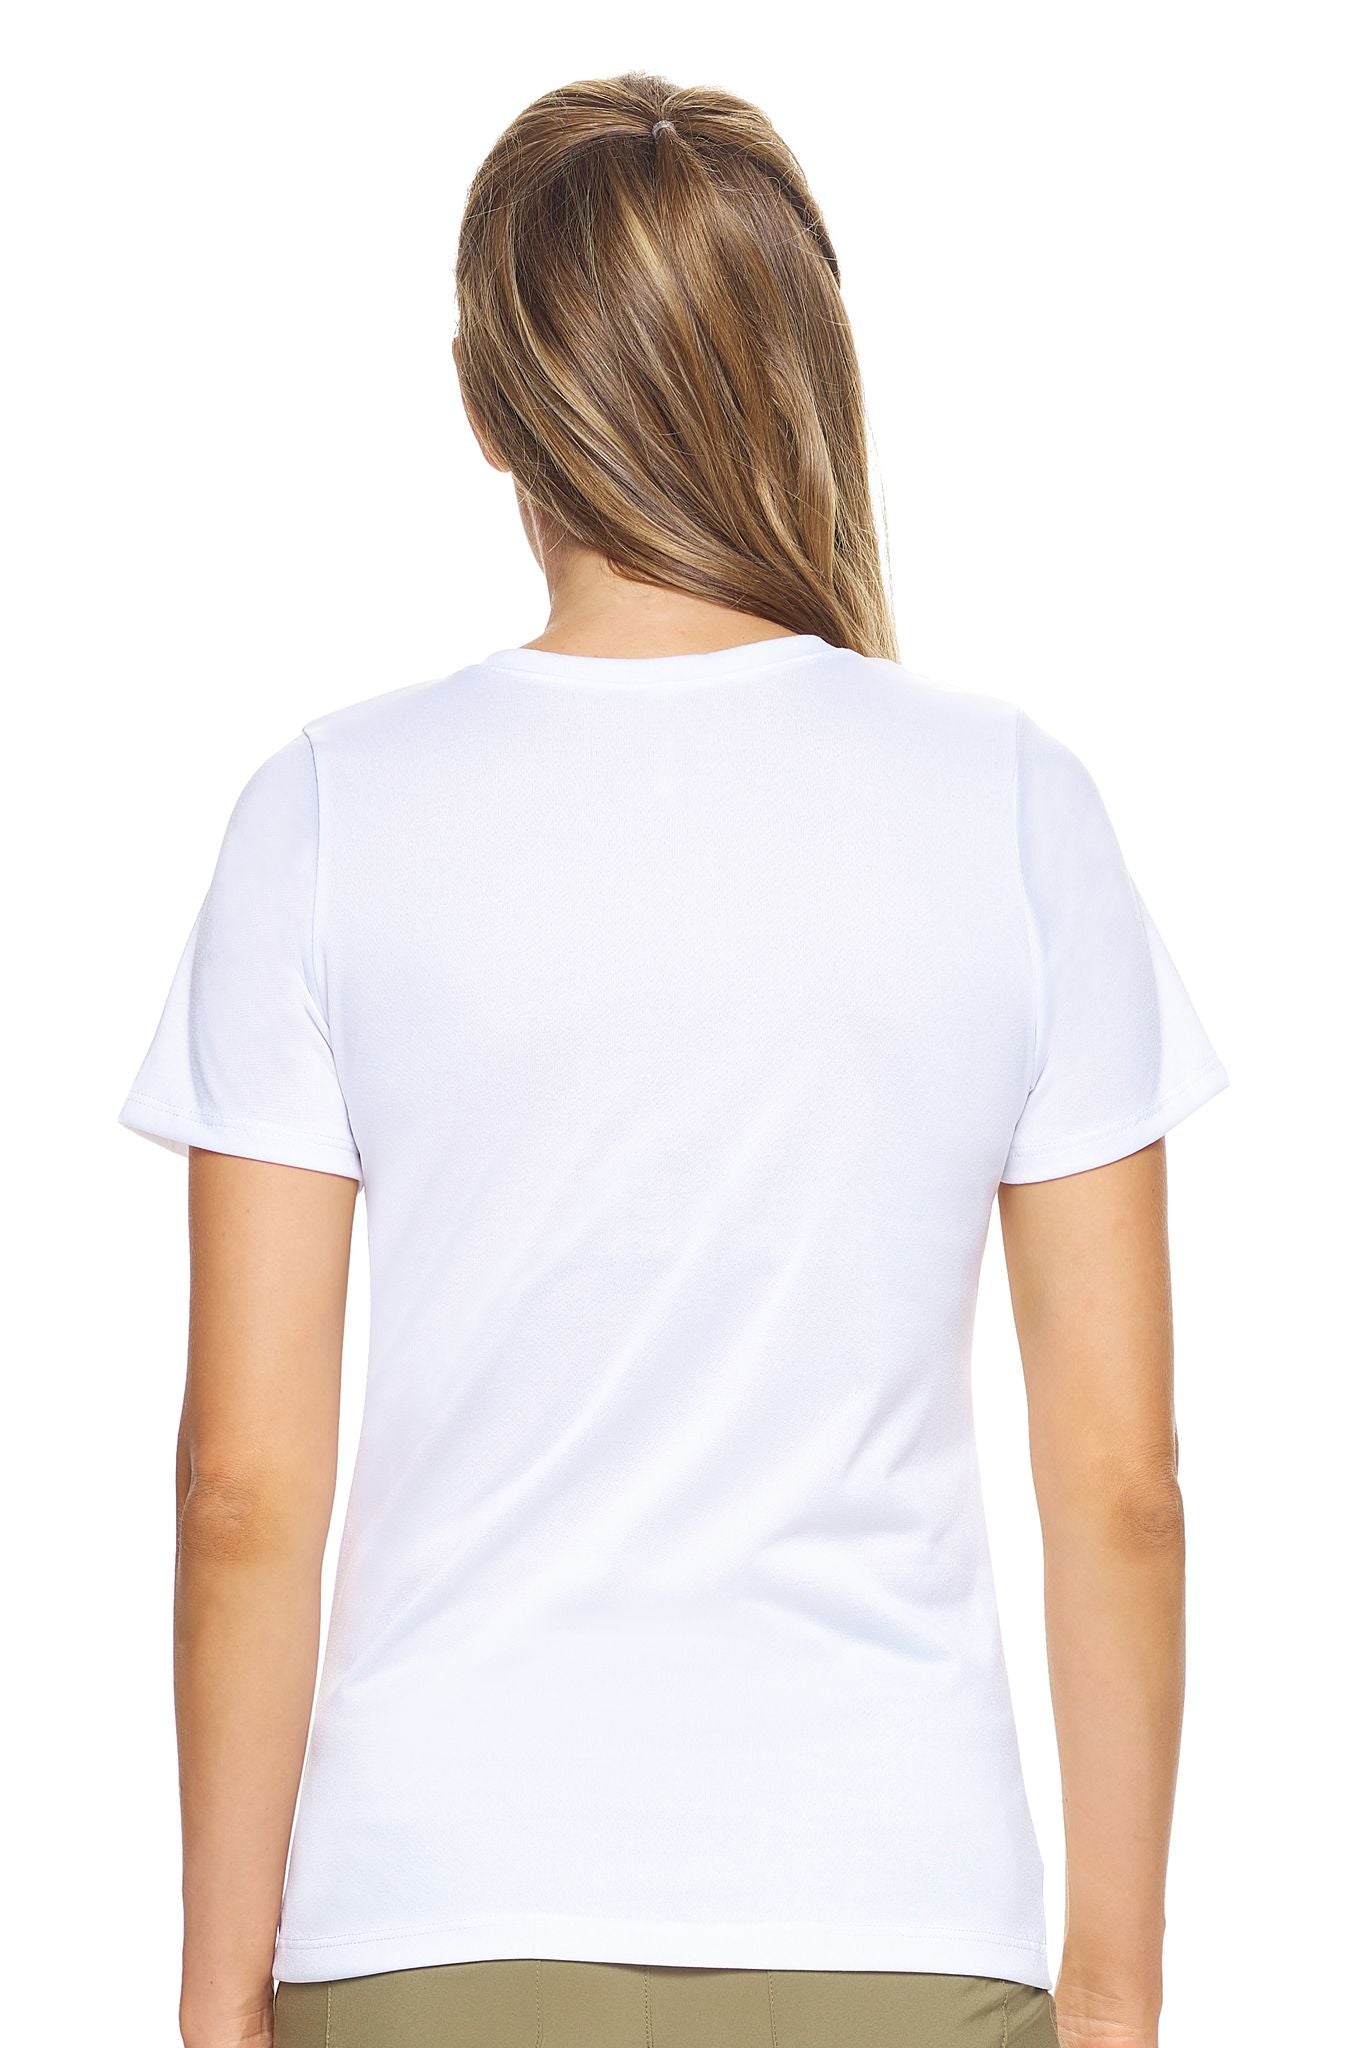 AT220🇺🇸 Natural Feel Jersey V-Neck - Expert Brand#white